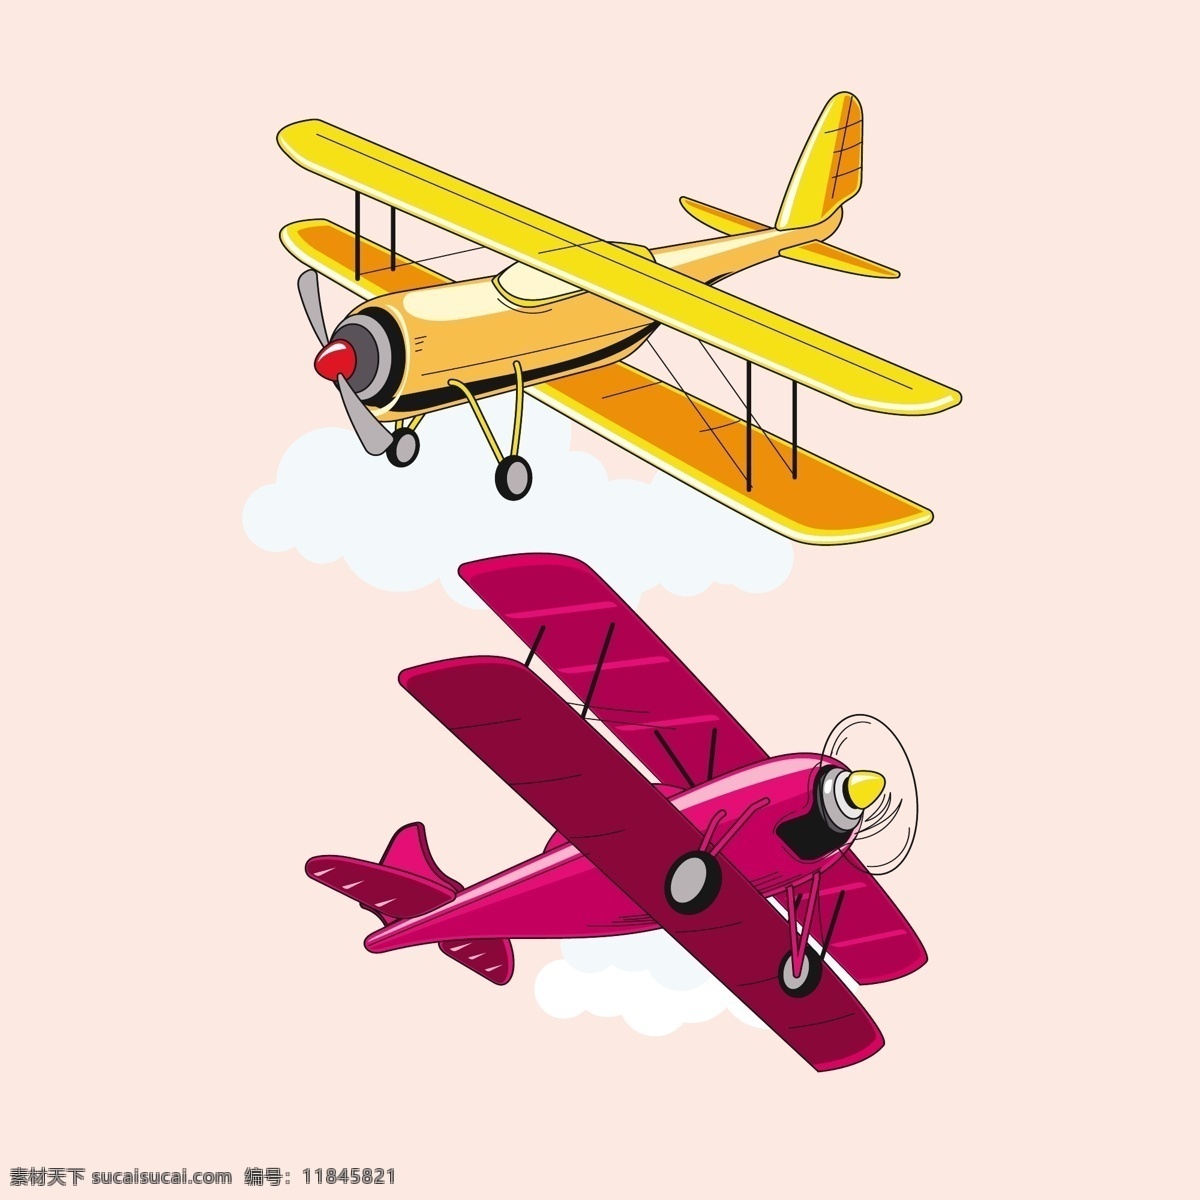 飞机 客机 螺旋桨飞机 喷气式飞机 矢量飞机 飞行器 时尚卡通飞机 老式飞机 交通物流 卡通设计